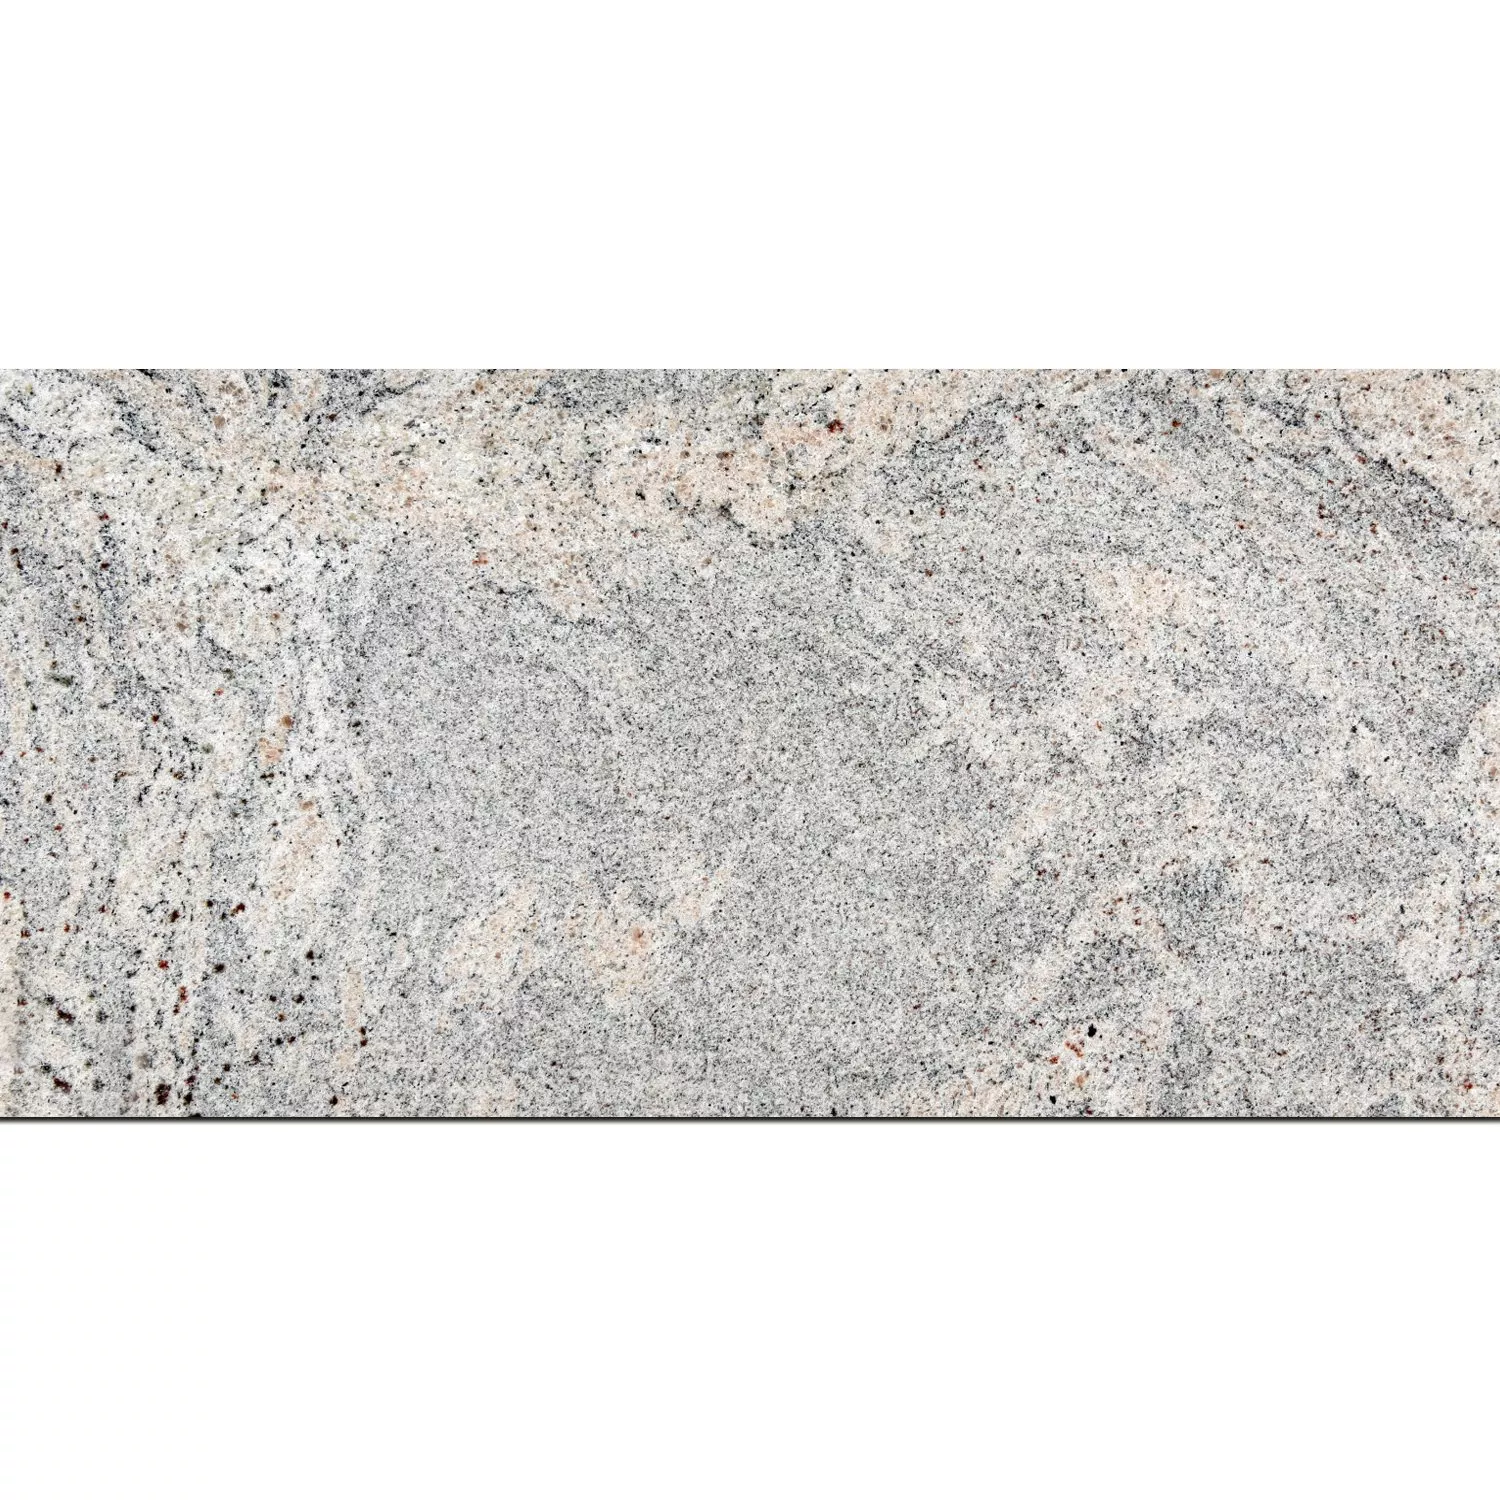 Placi De Piatra Naturala Granit Juparana Lustruit 30,5x61cm